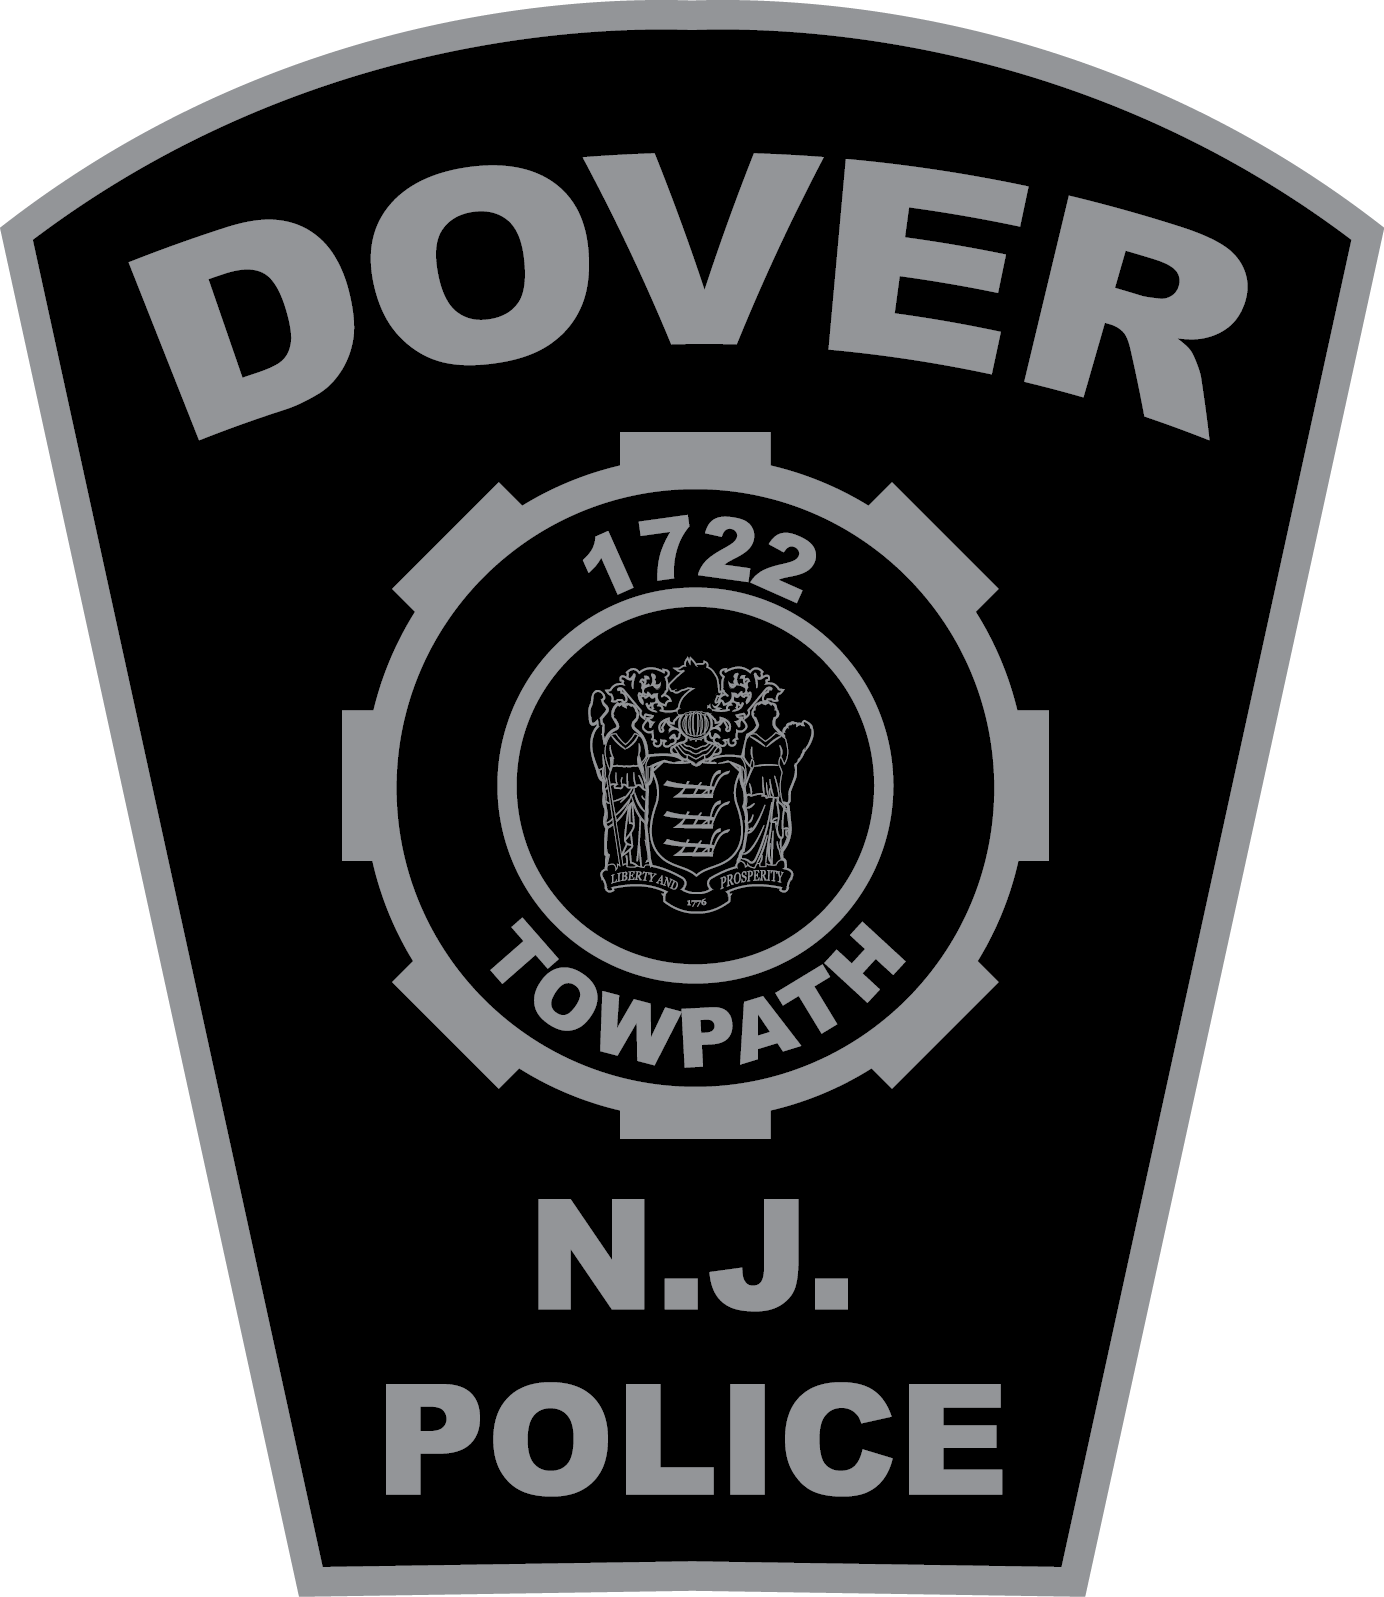 Dover Police Department, NJ Police Jobs